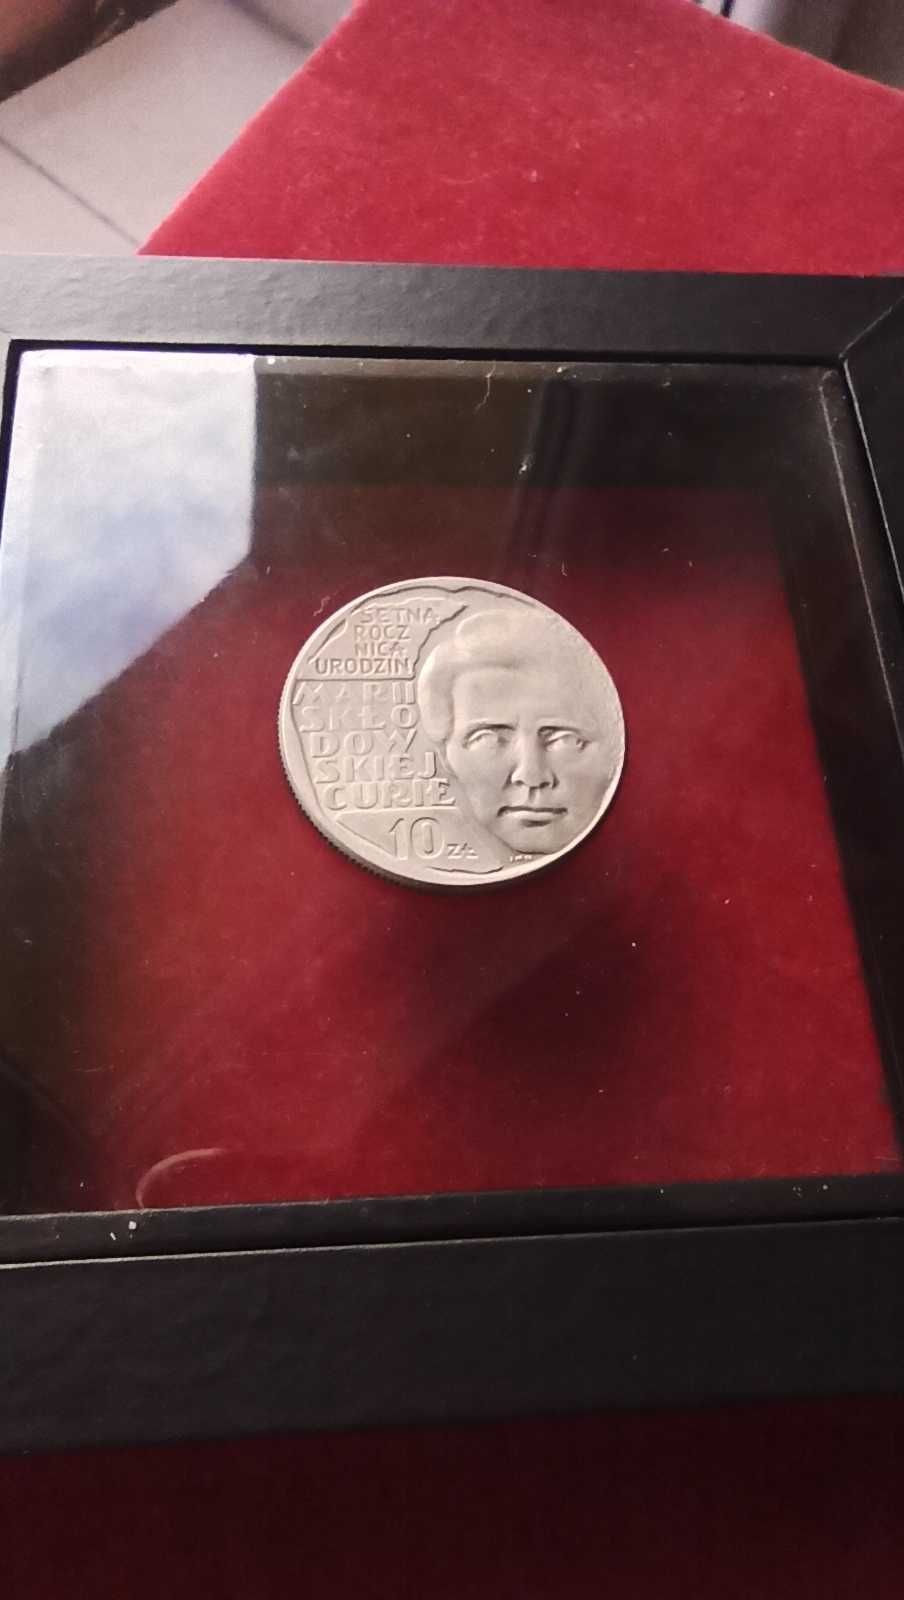 PRL, Moneta 10 złotych Skłodowska-Curie 1967r / Mennicza